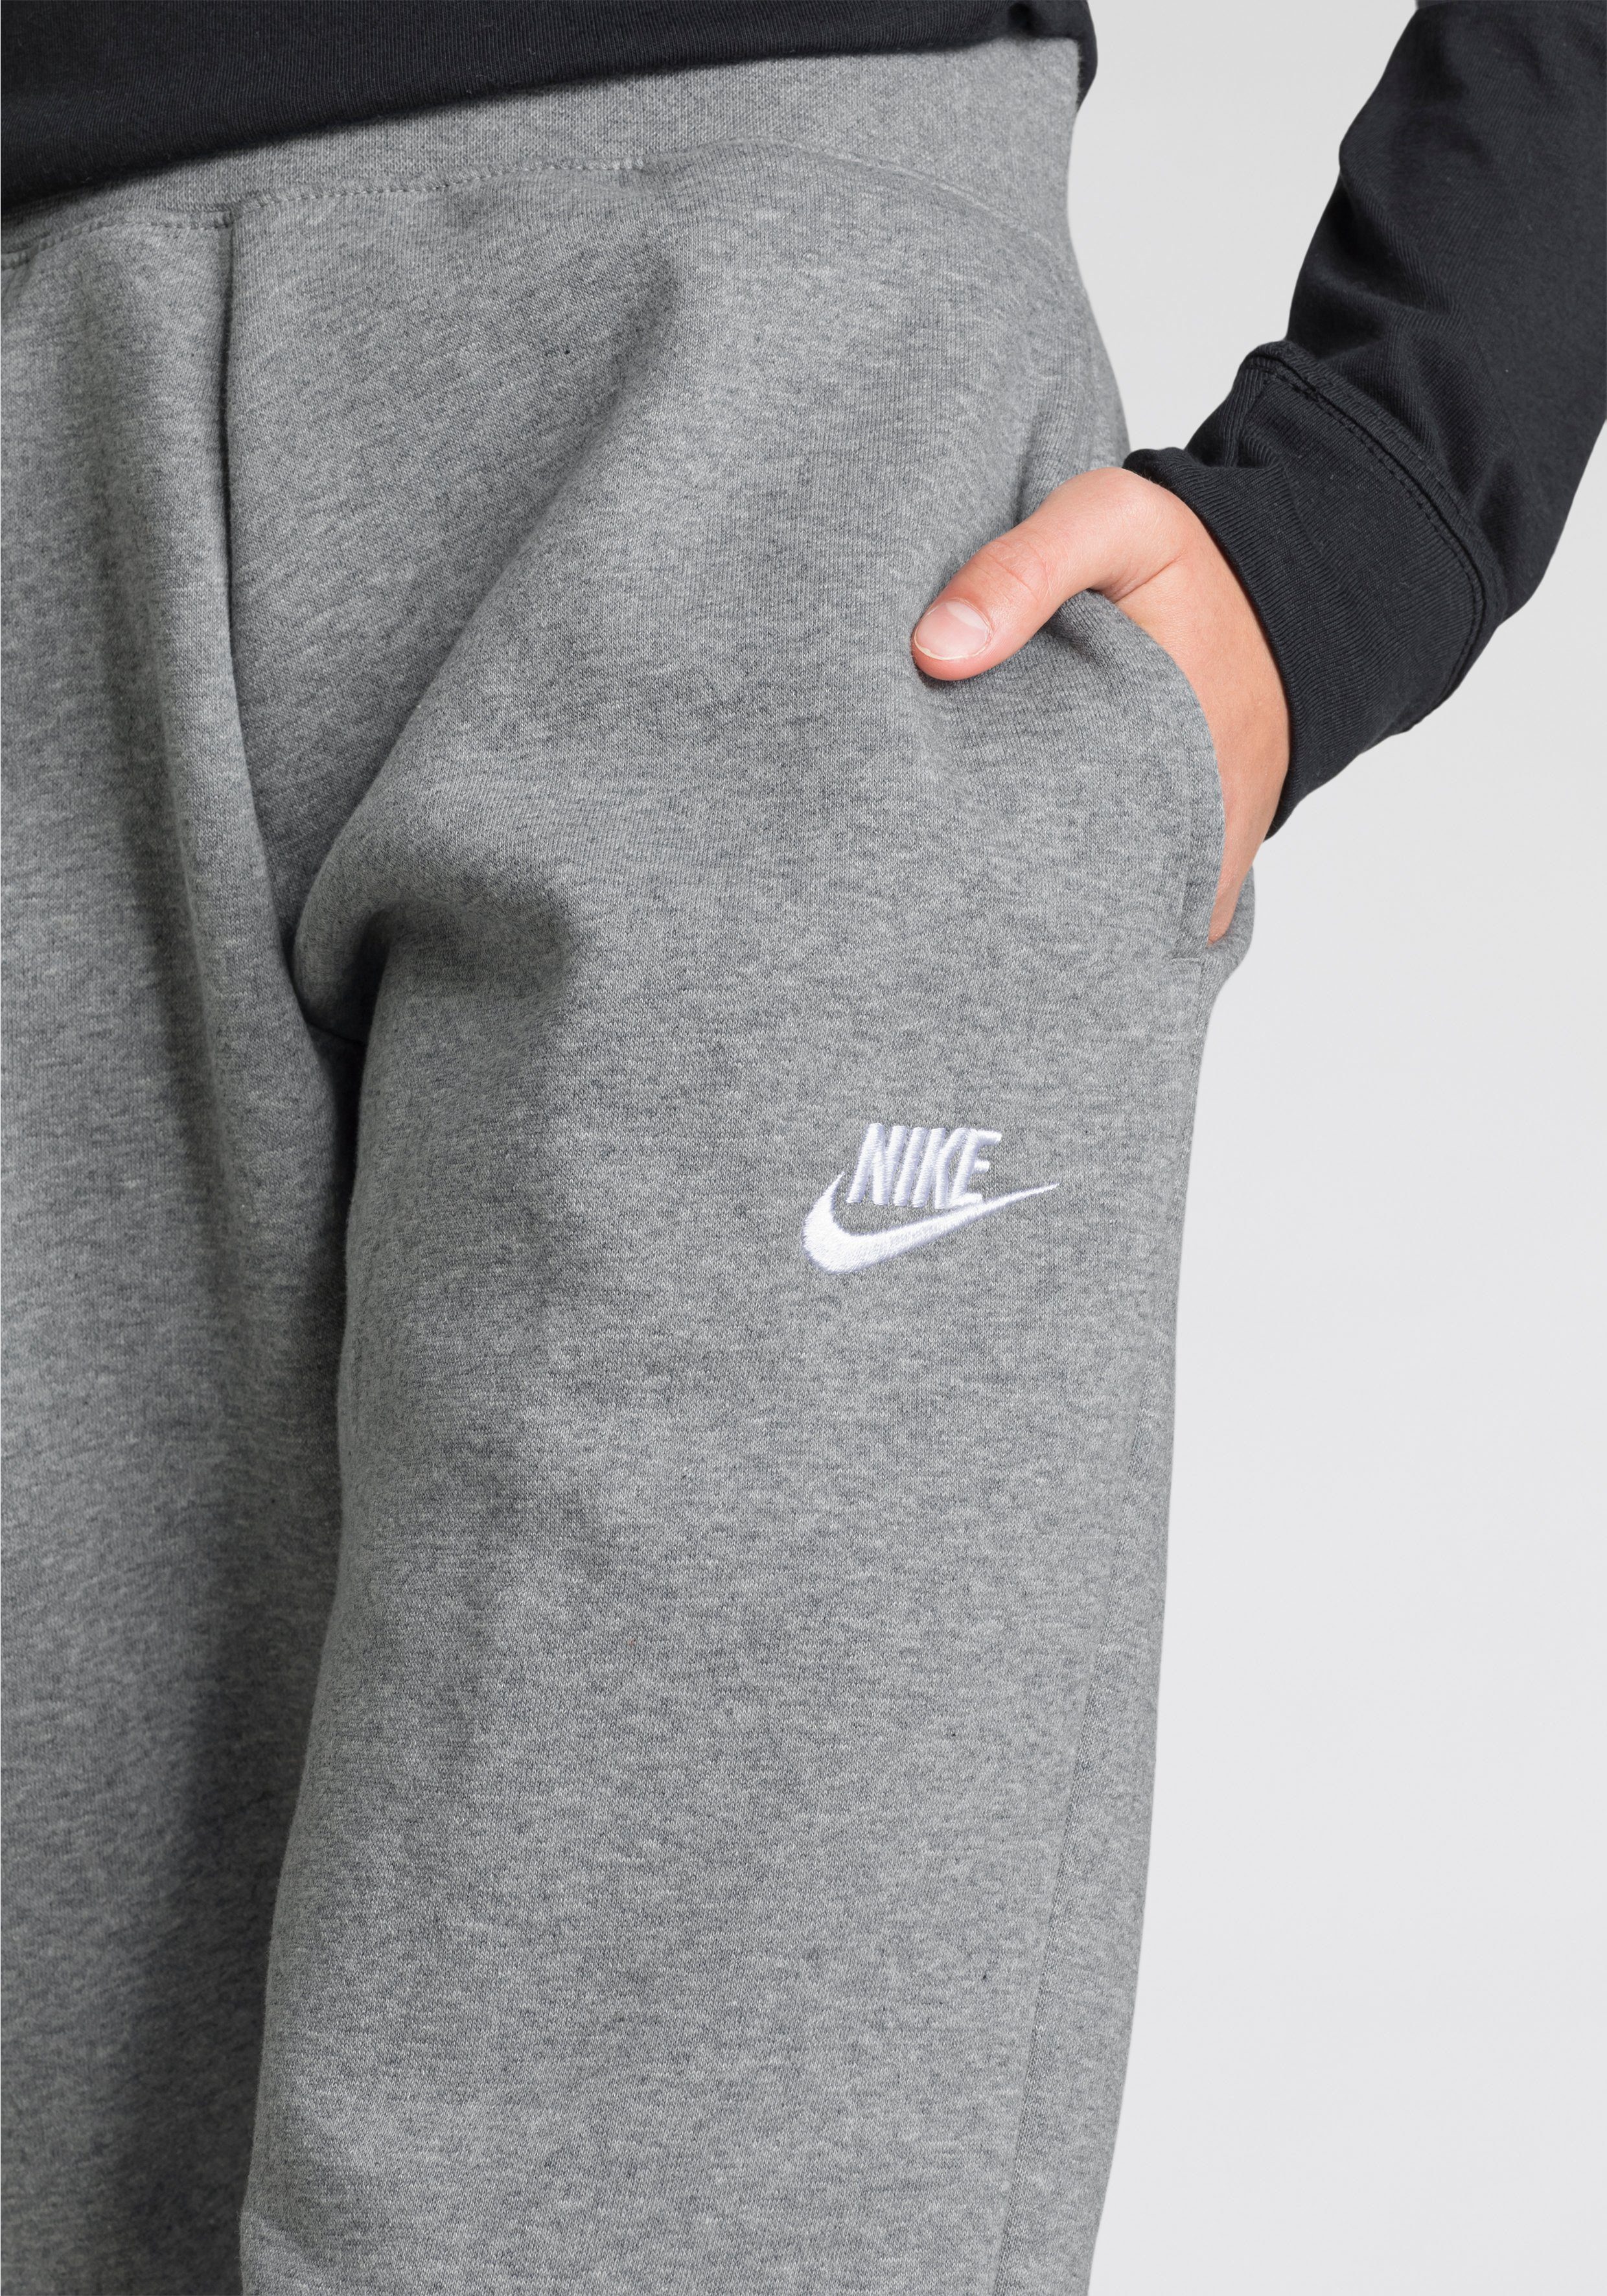 Nike Sportswear Jogginghose Big Pants grau-meliert Kids' (Girls) Club Fleece